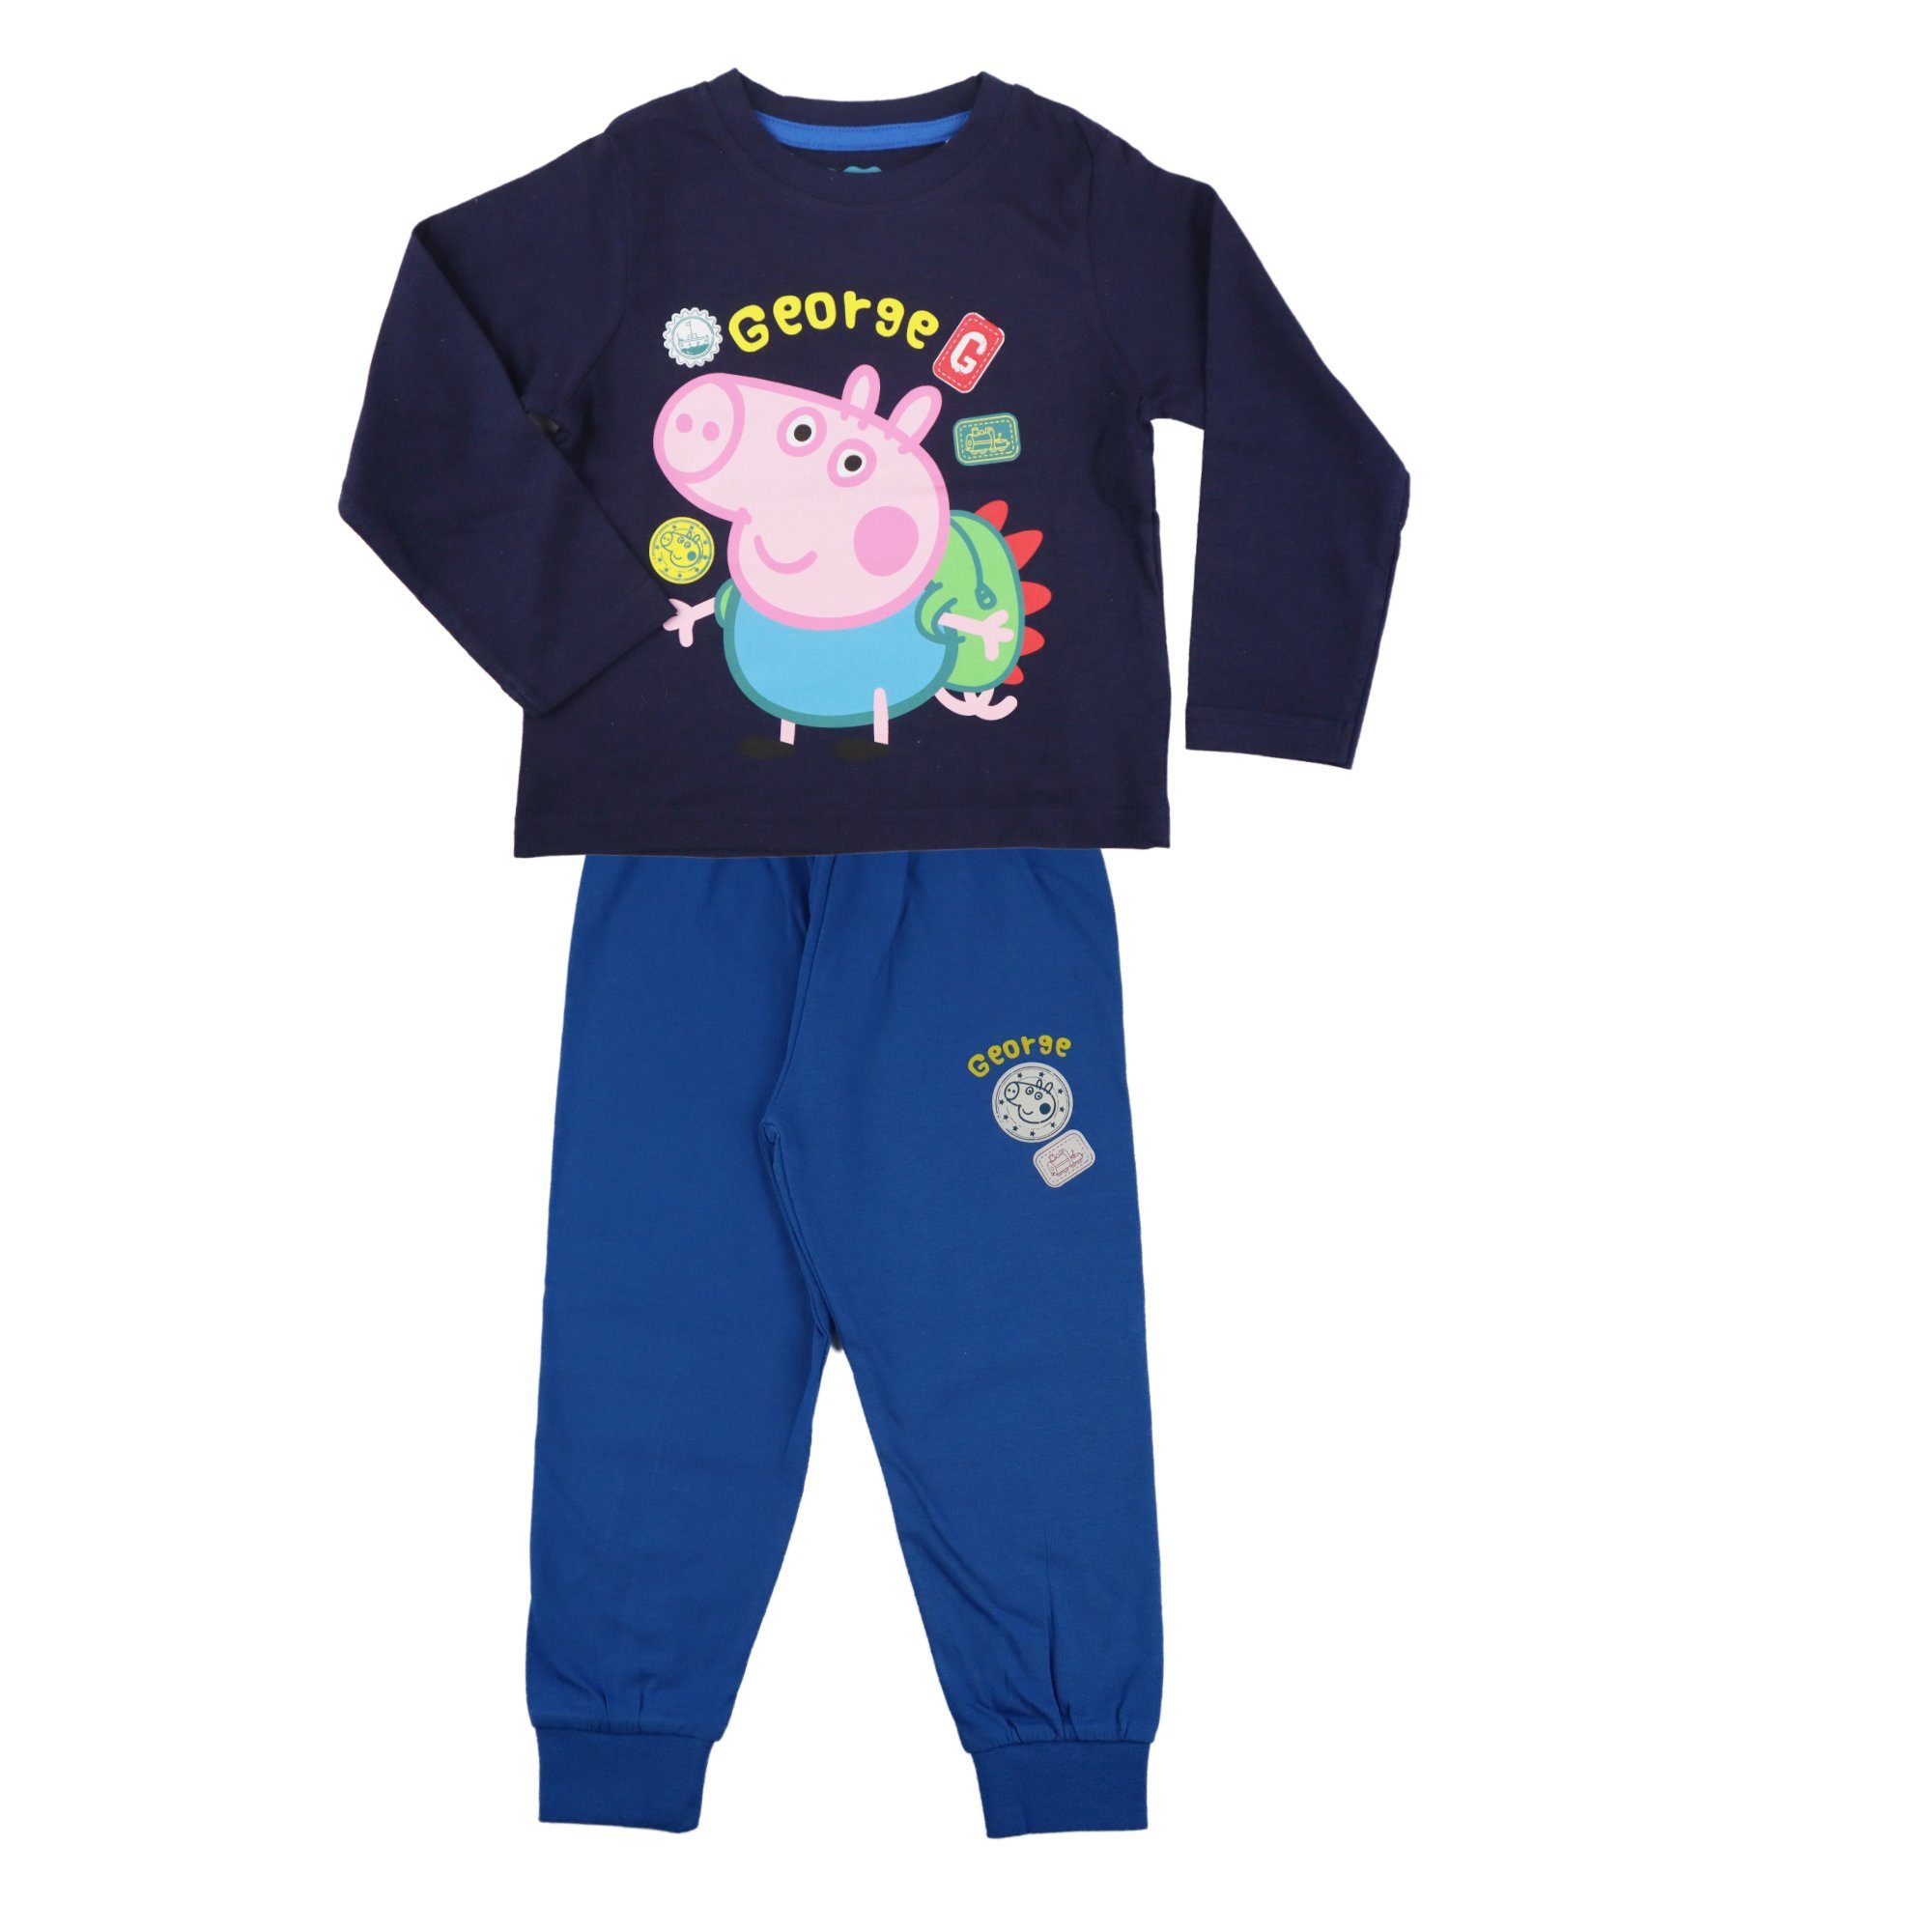 Peppa Pig Schlafanzug Peppa Wutz George Jungen Kinder Pyjama Gr. 92 bis 116, 100% Baumwolle Dunkelblau